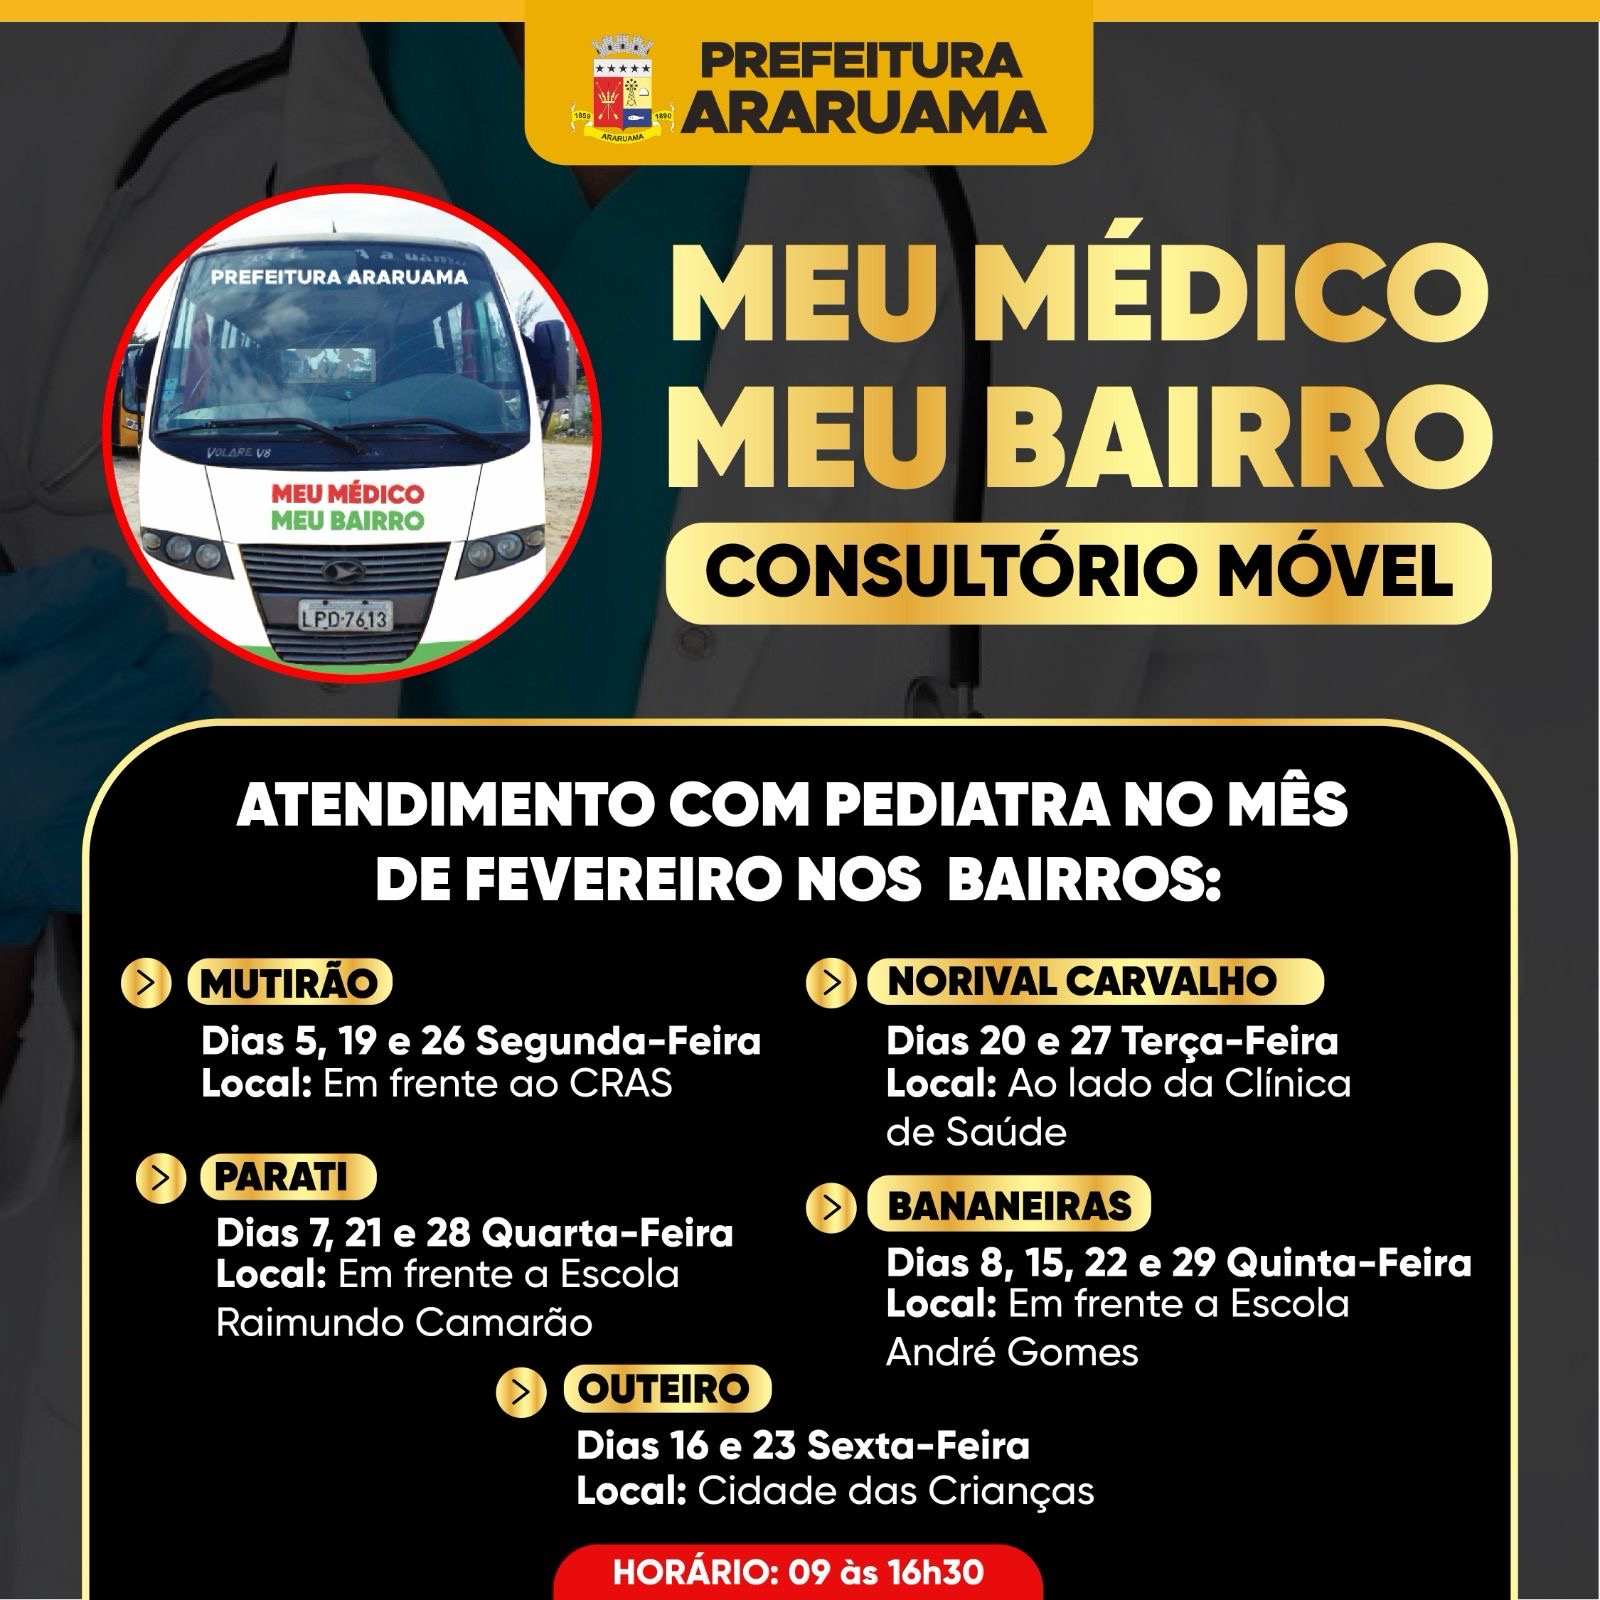 Programa “Meu Médico, Meu bairro” vai levar atendimento de pediatra a 5 bairros de Araruama nesse mês de fevereiro